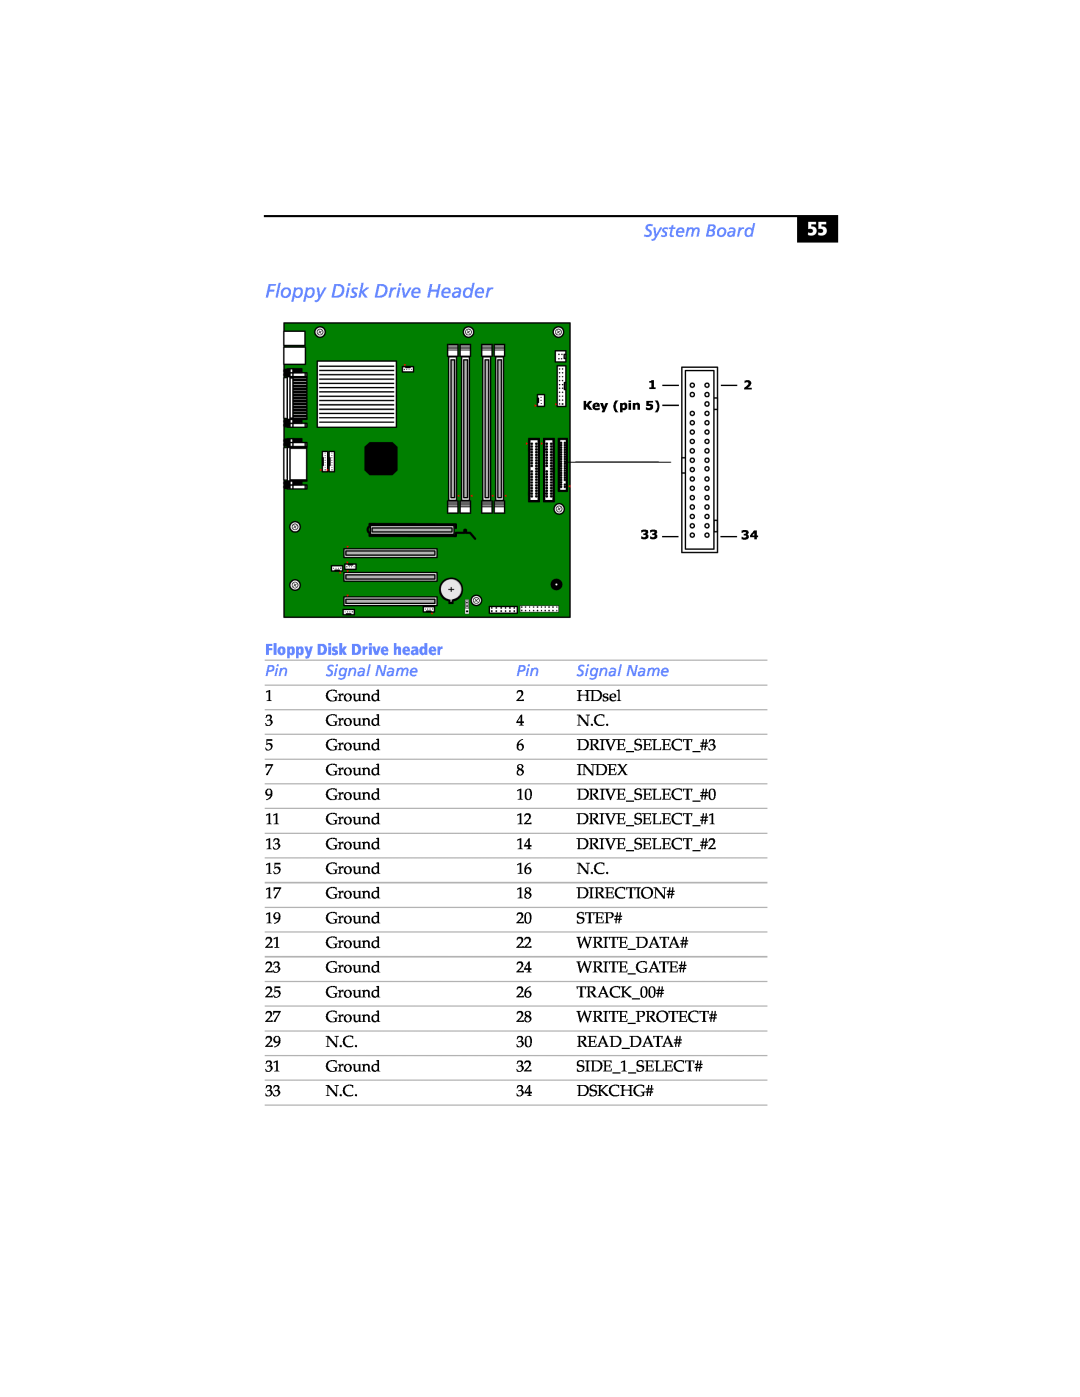 Sony PCV-RX480DS, PCV-RX462DS, PCV-RX490TV Floppy Disk Drive Header, System Board, Floppy Disk Drive header, Signal Name 